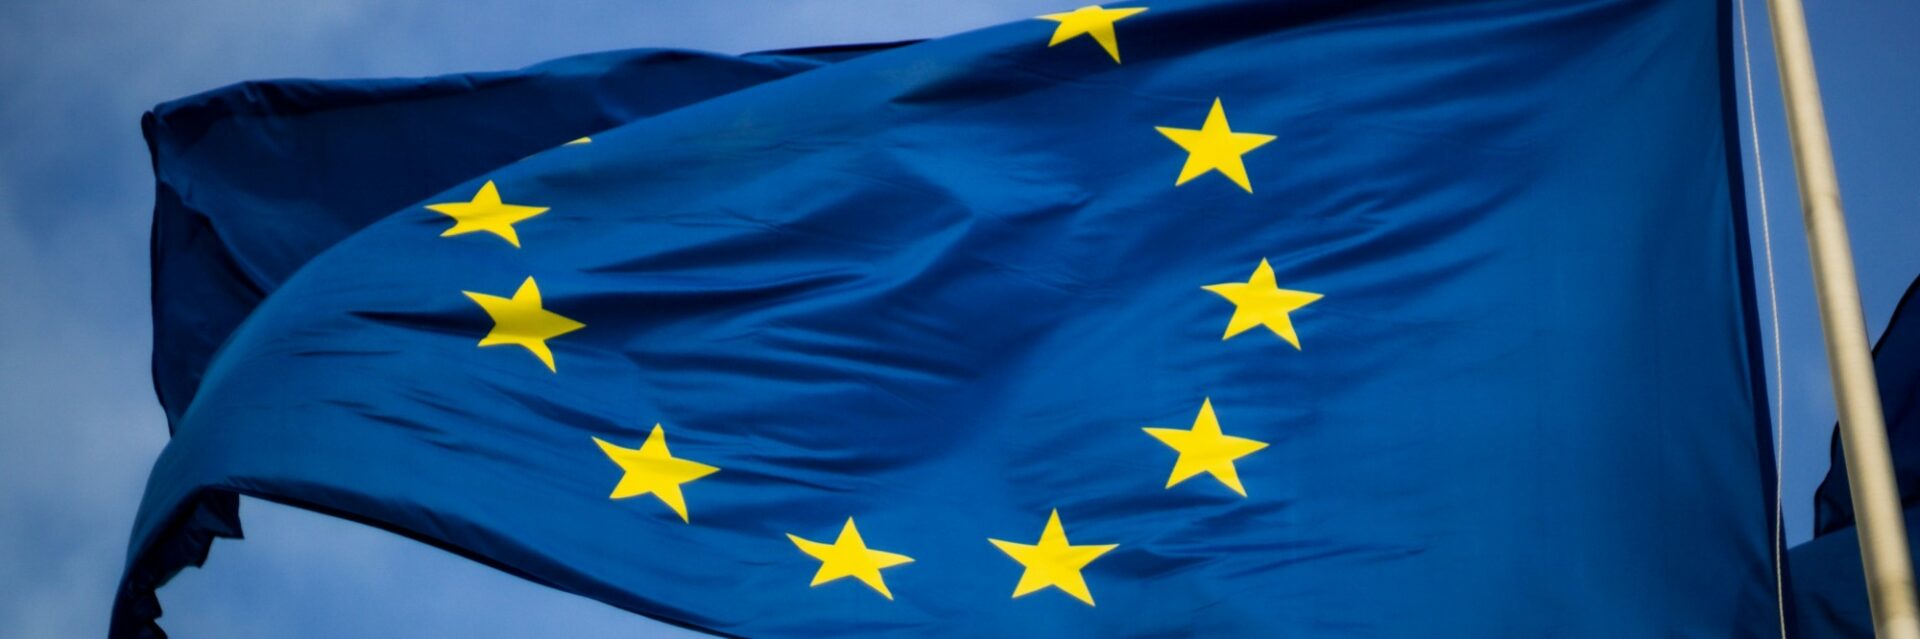 Beitragsbild Blogartikel eIDAS 2.0 - europäische Fahne